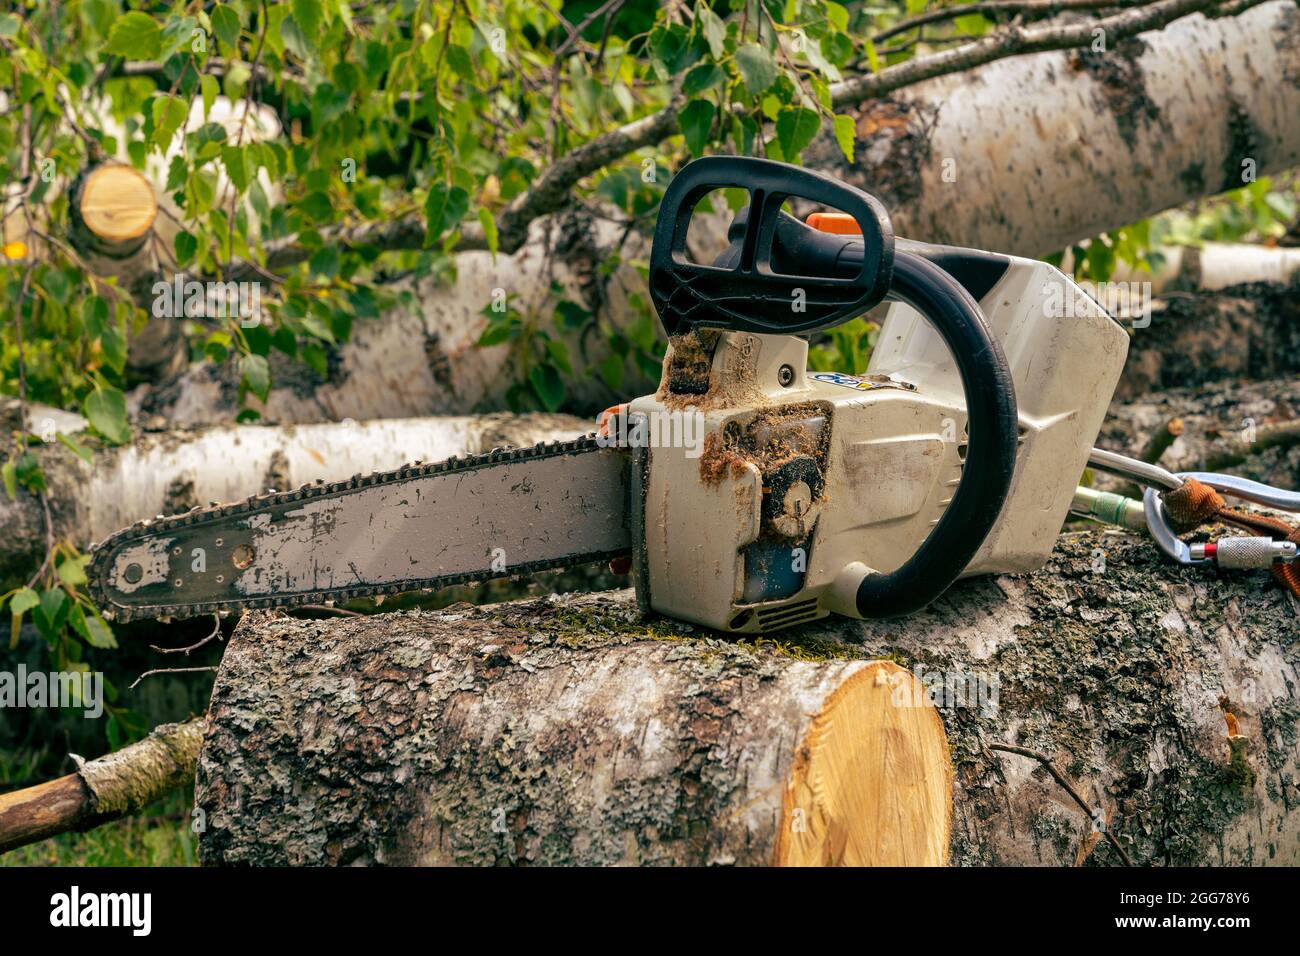 chainsaw de la parte superior del arborista sin cable un chainsaw de la parte superior del arborista con una correa de seguridad se apoya en un registro del abedul Foto de stock